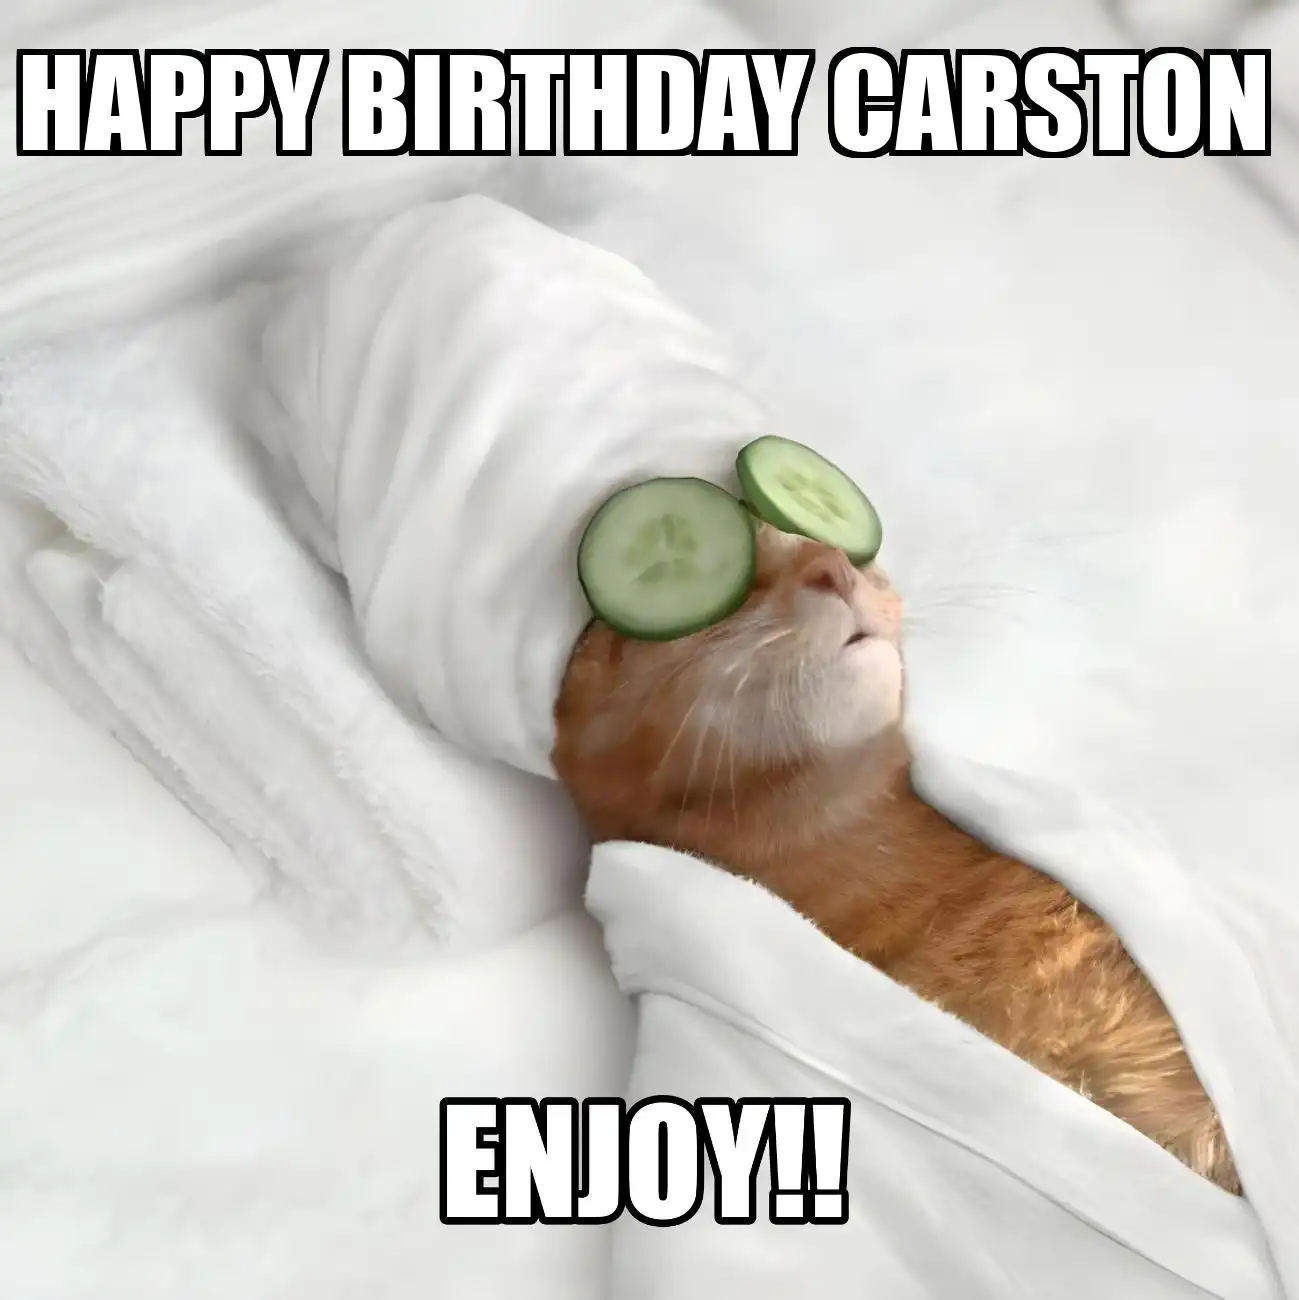 Happy Birthday Carston Enjoy Cat Meme